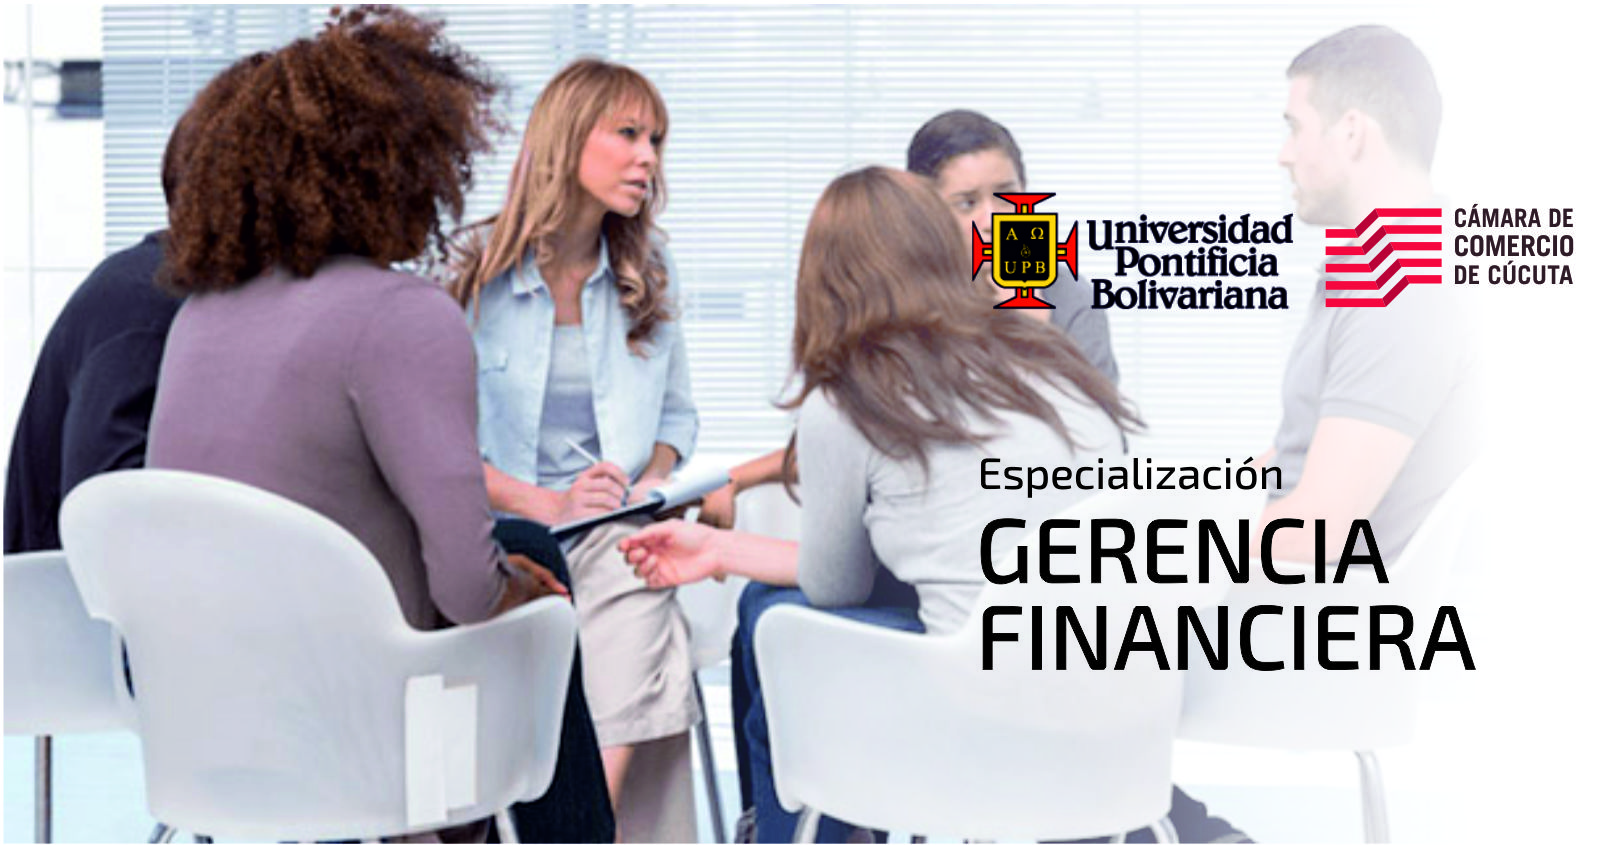 Le gustara especializarse en Gerencia Financiera?